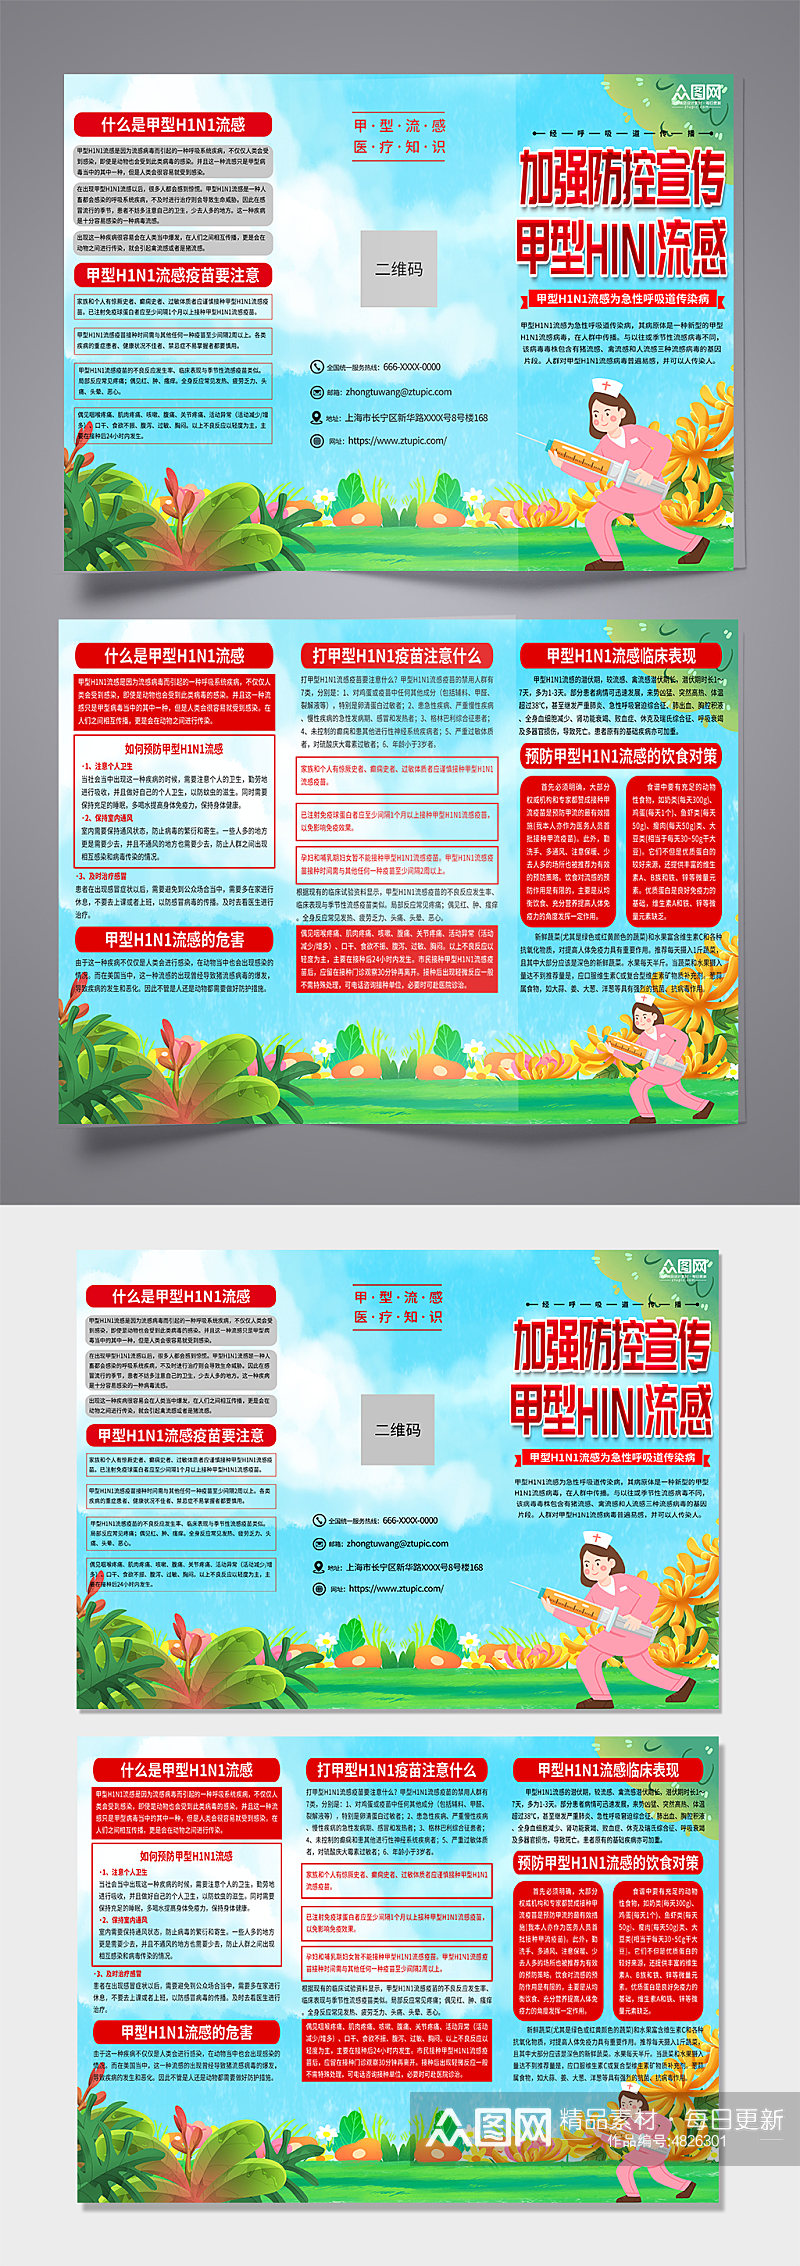 绿色甲型H1N1流感防治知识宣传三折页素材